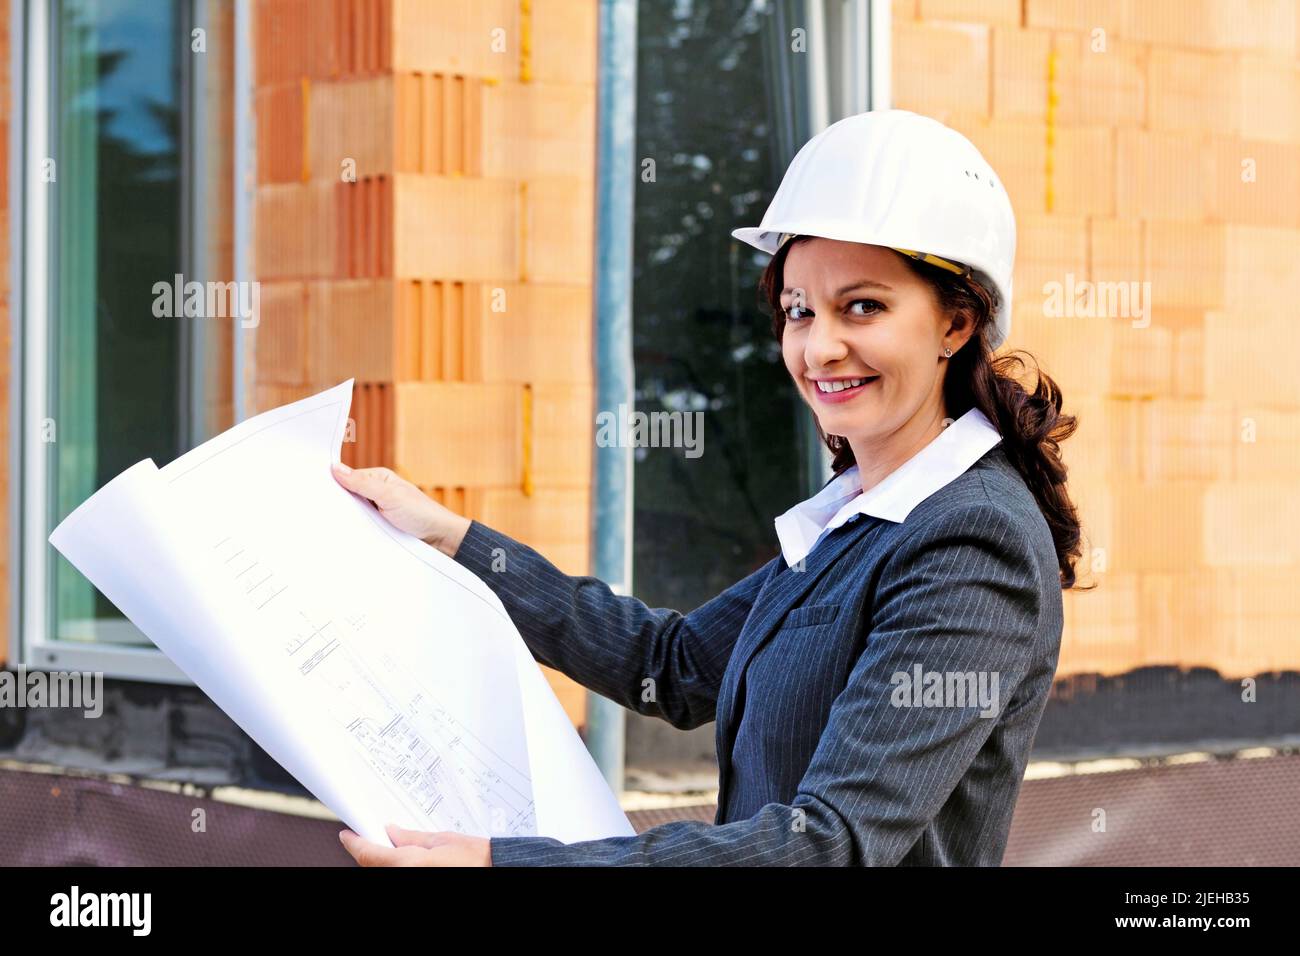 Junge Architektin mit Bauplan vor Rohbau eines Wohnhauses Stock Photo